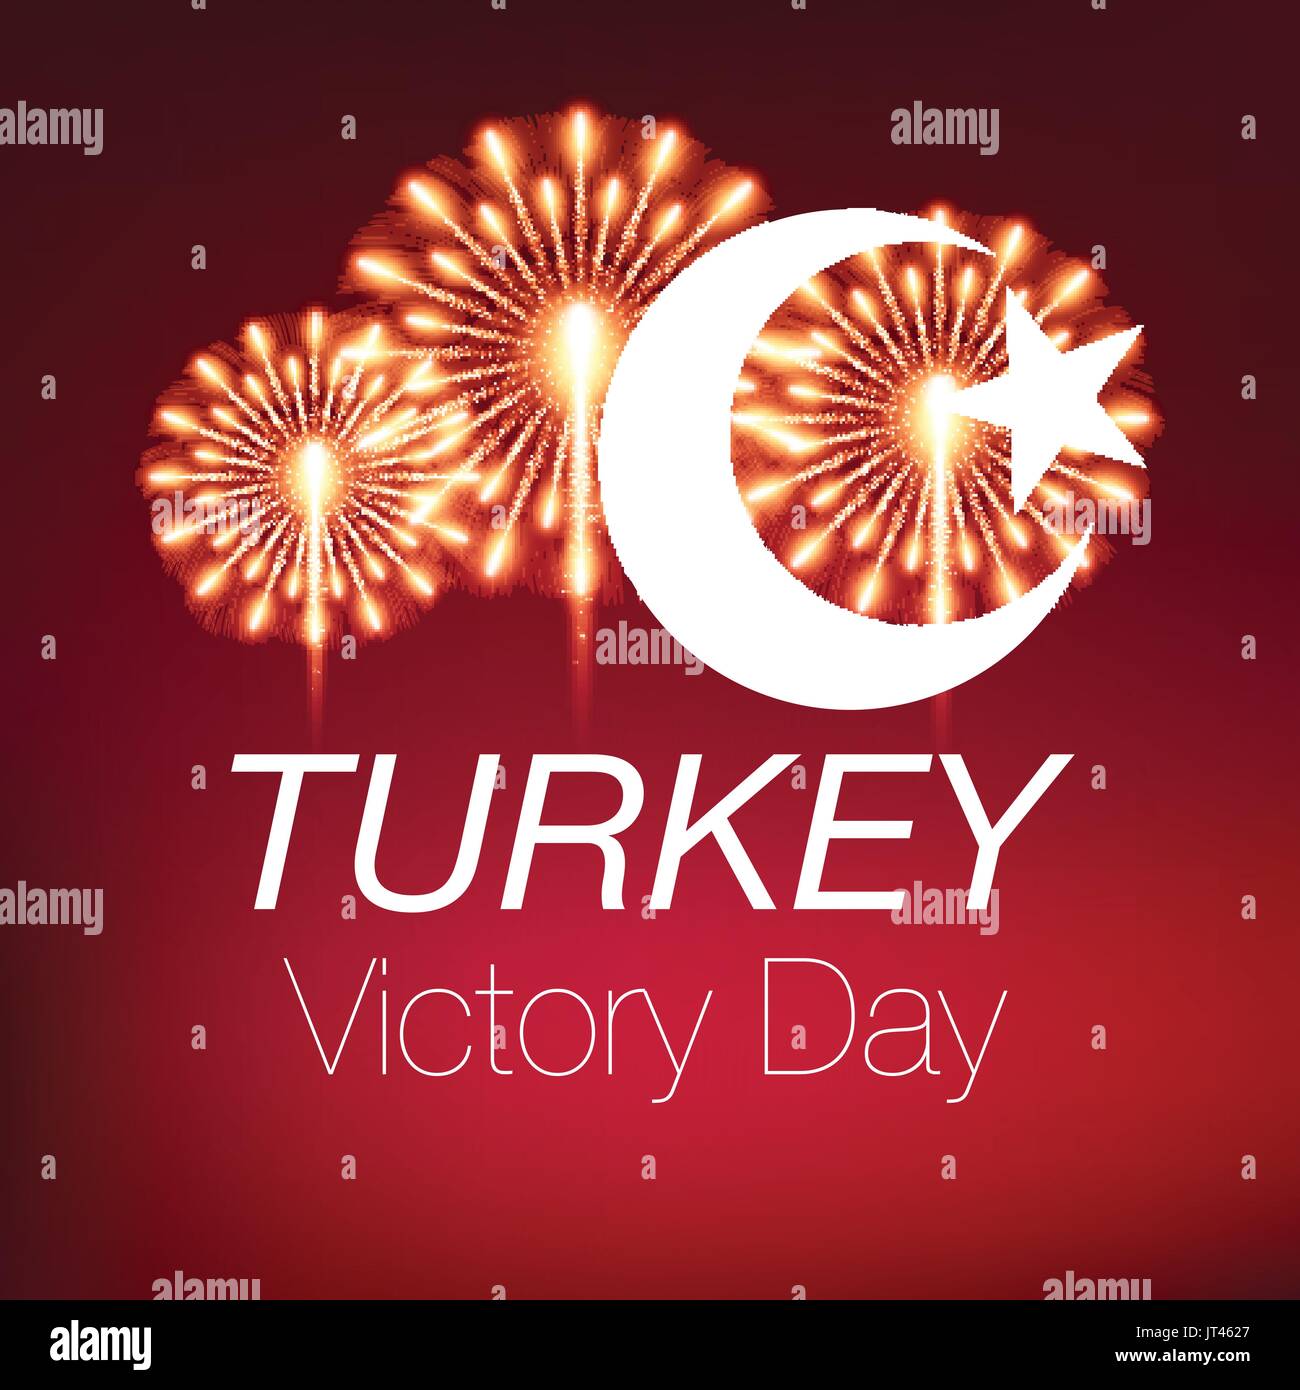 30 août zafer bayrami Fête de la Victoire Turquie Illustration de Vecteur